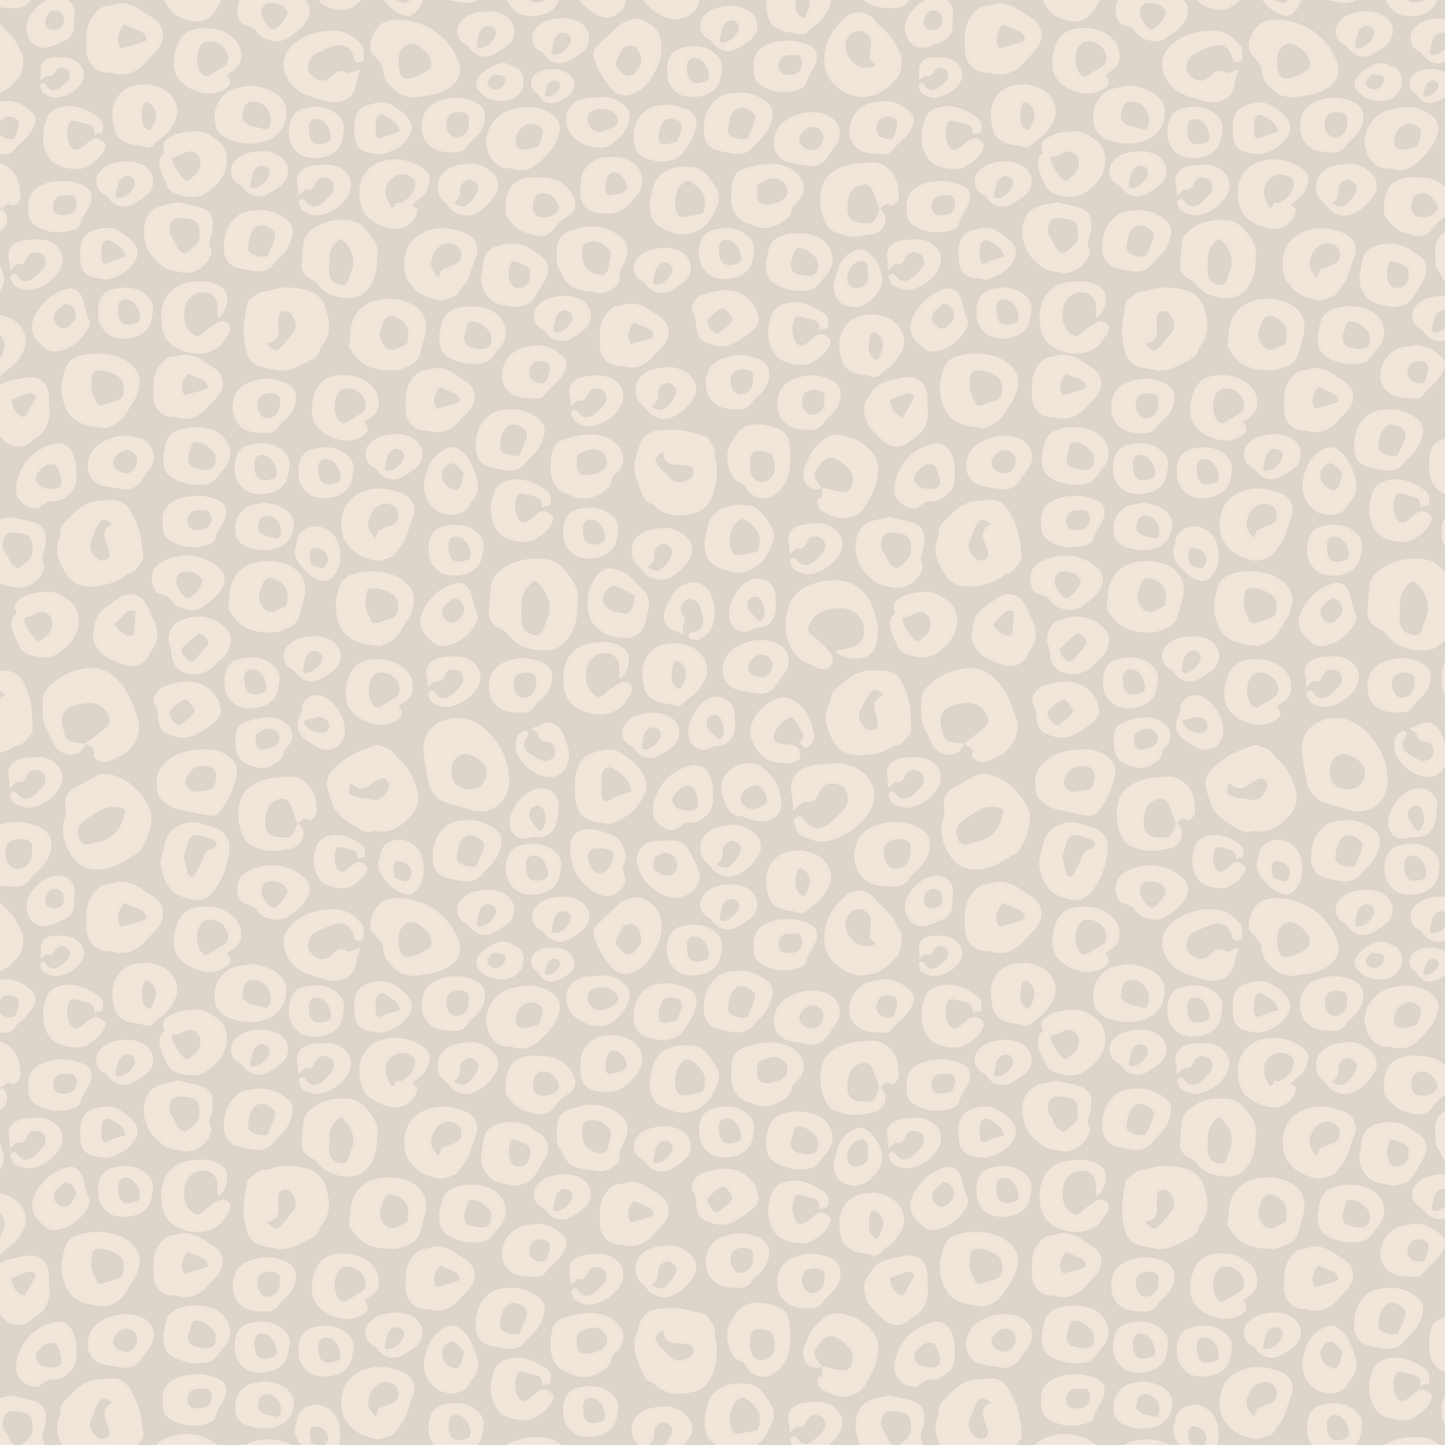 Open Dots Wallpaper - Neutral